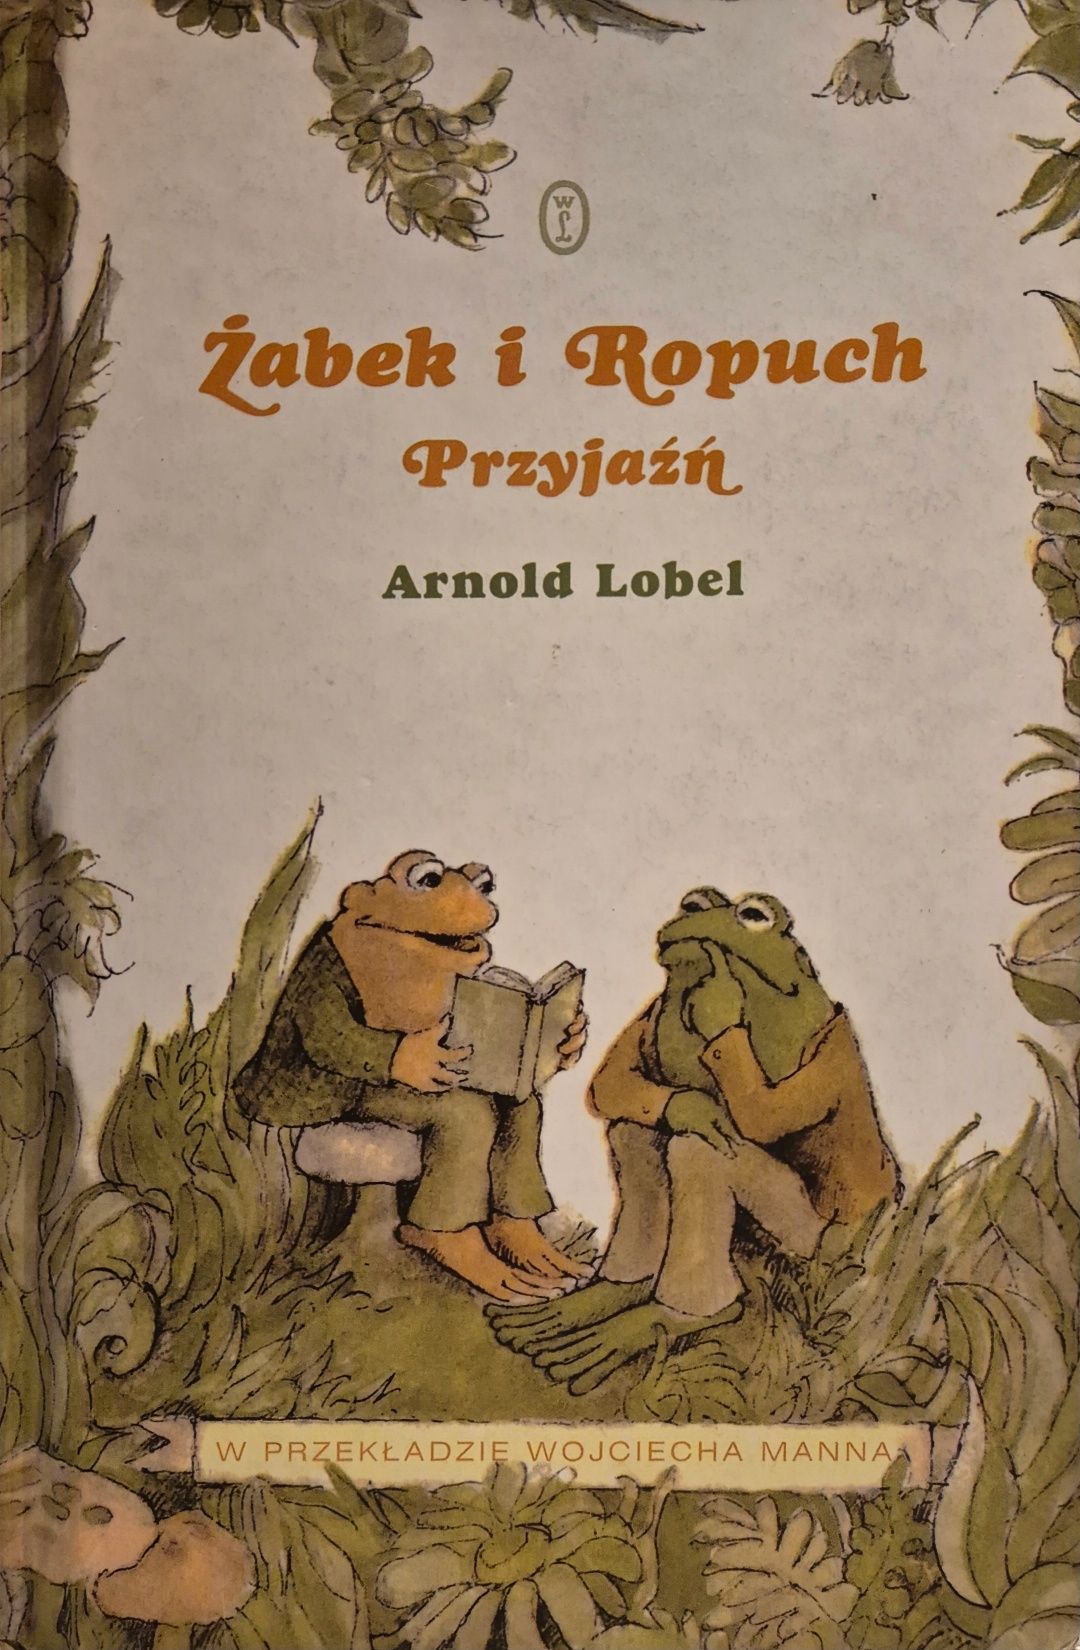 Żabek i ropuch Przyjaźń Arnold Lobel